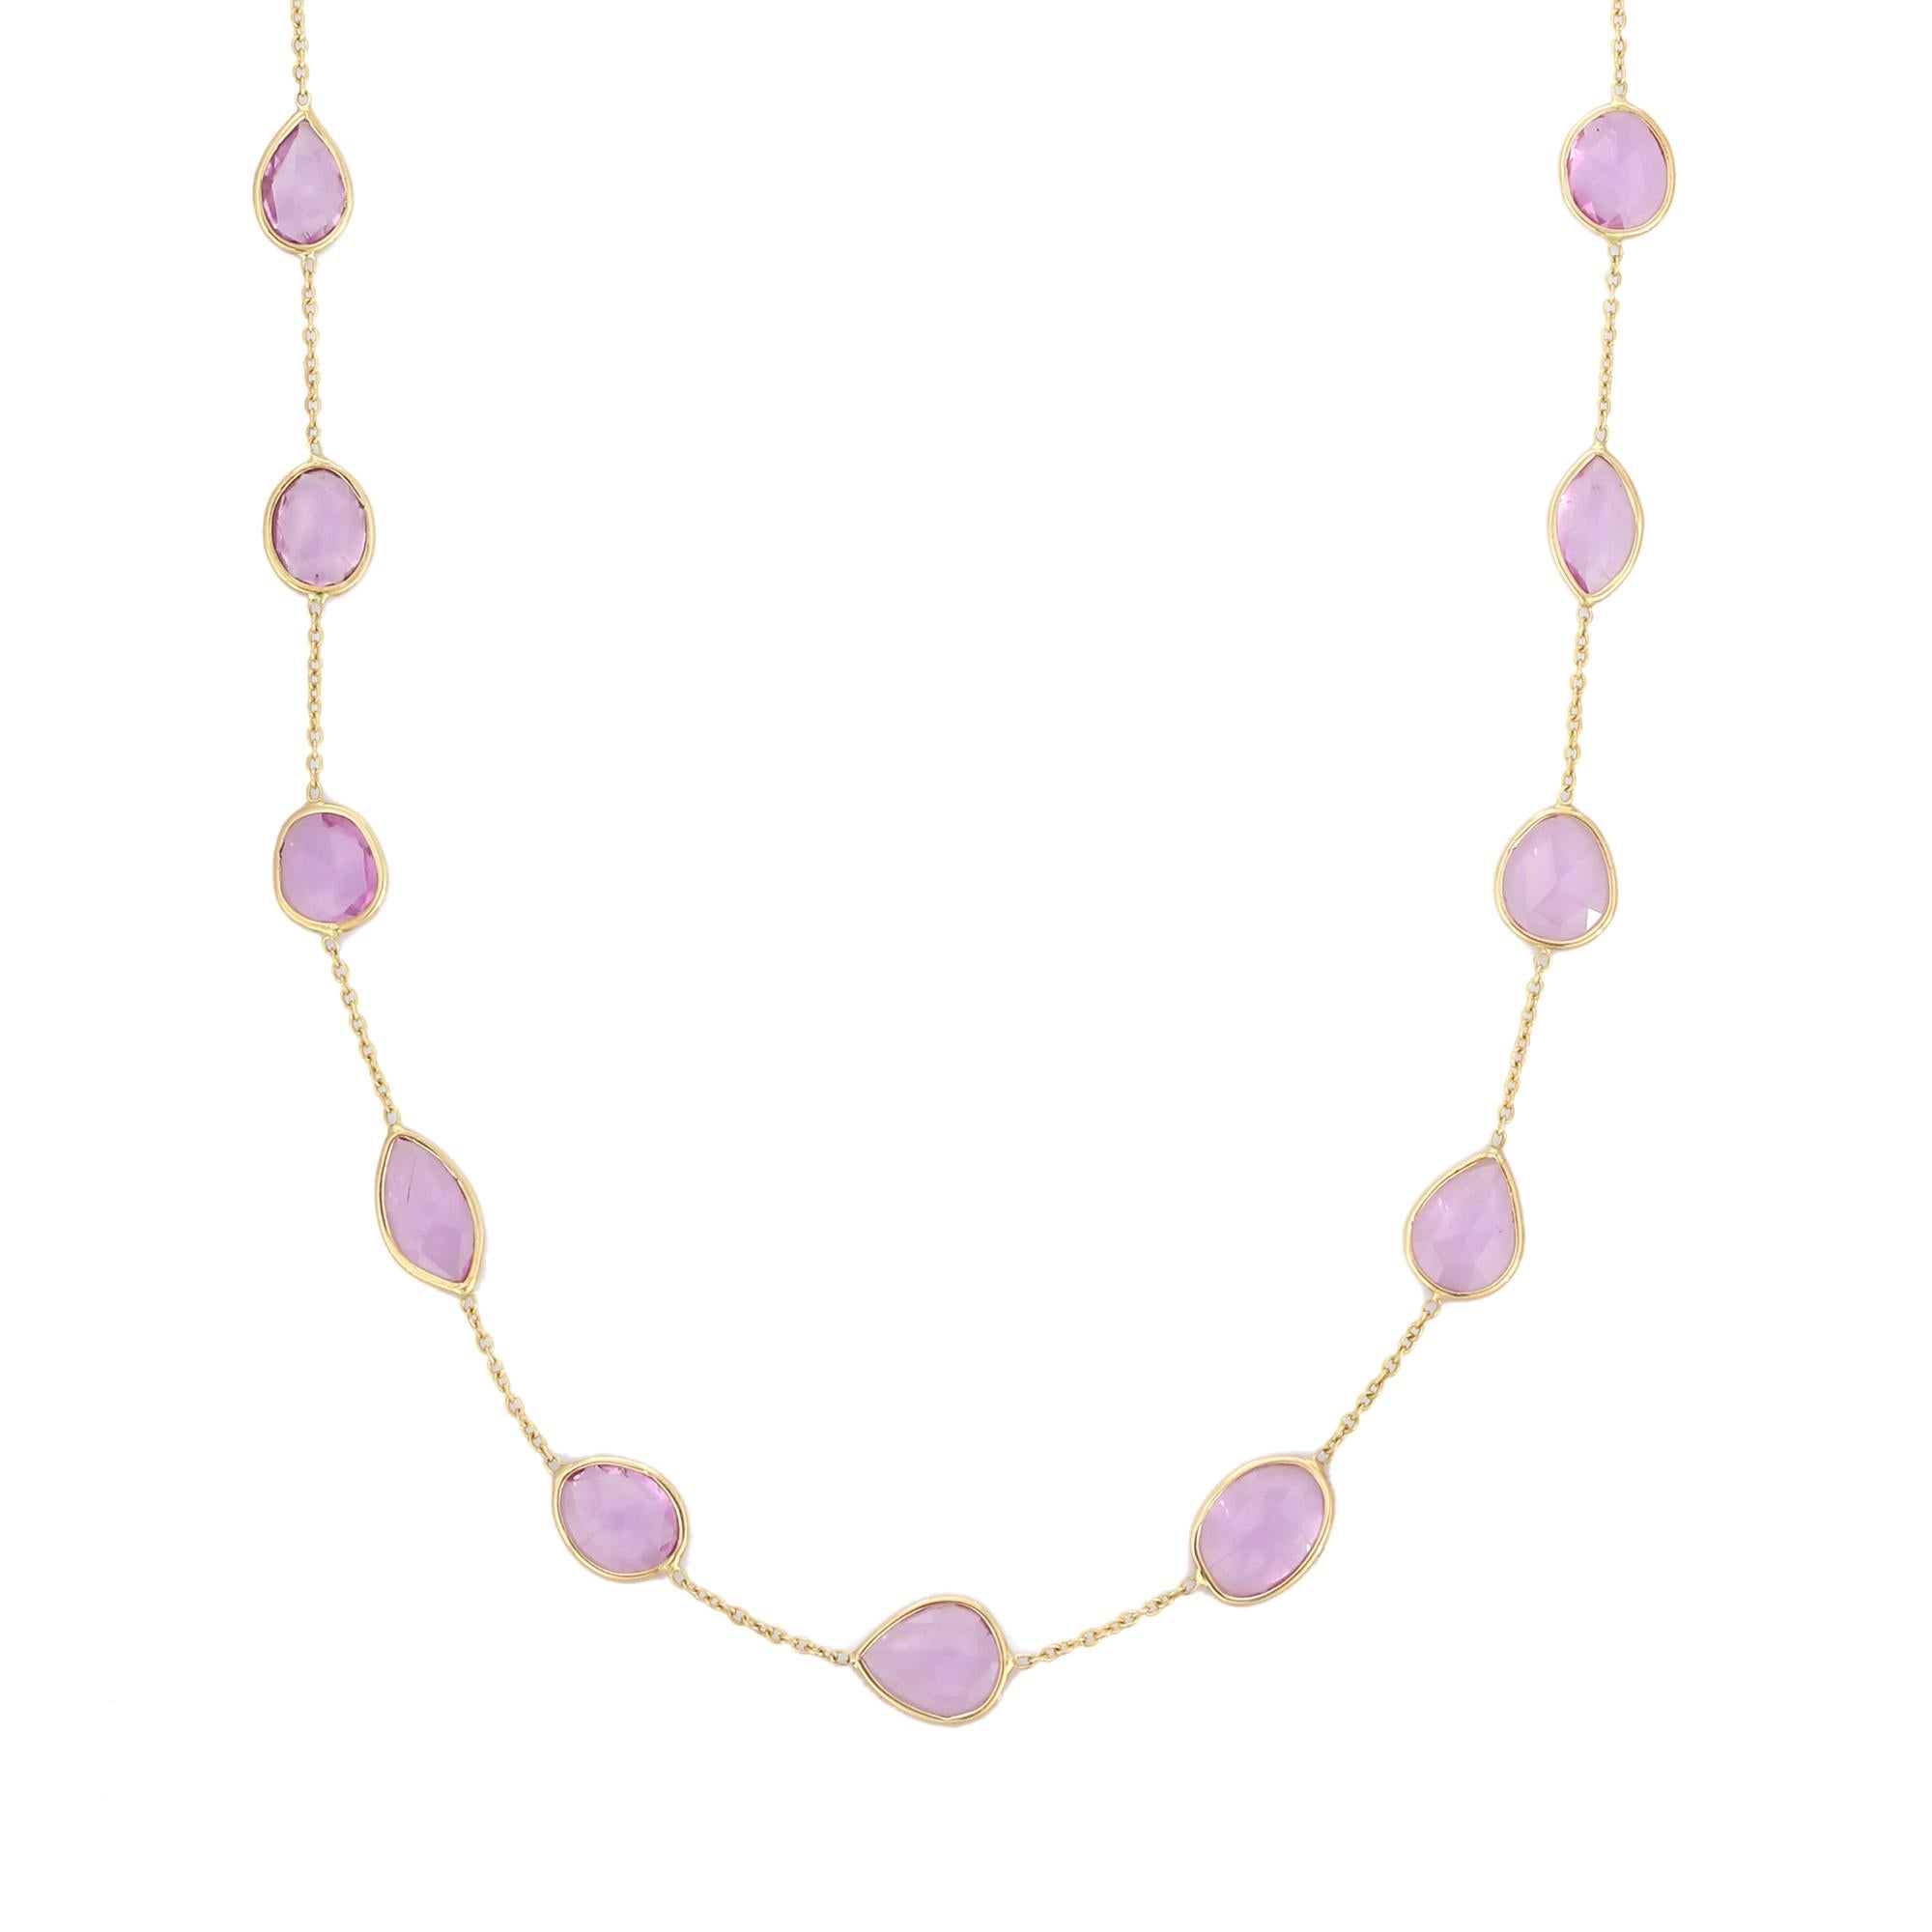 Rosa Saphir-Halskette aus 18 Karat Gold, besetzt mit Saphiren im Mix-Schliff.
Ergänzen Sie Ihren Look mit dieser eleganten Kette mit rosa Saphiren. Dieses atemberaubende Schmuckstück wertet einen Freizeitlook oder ein elegantes Outfit sofort auf.